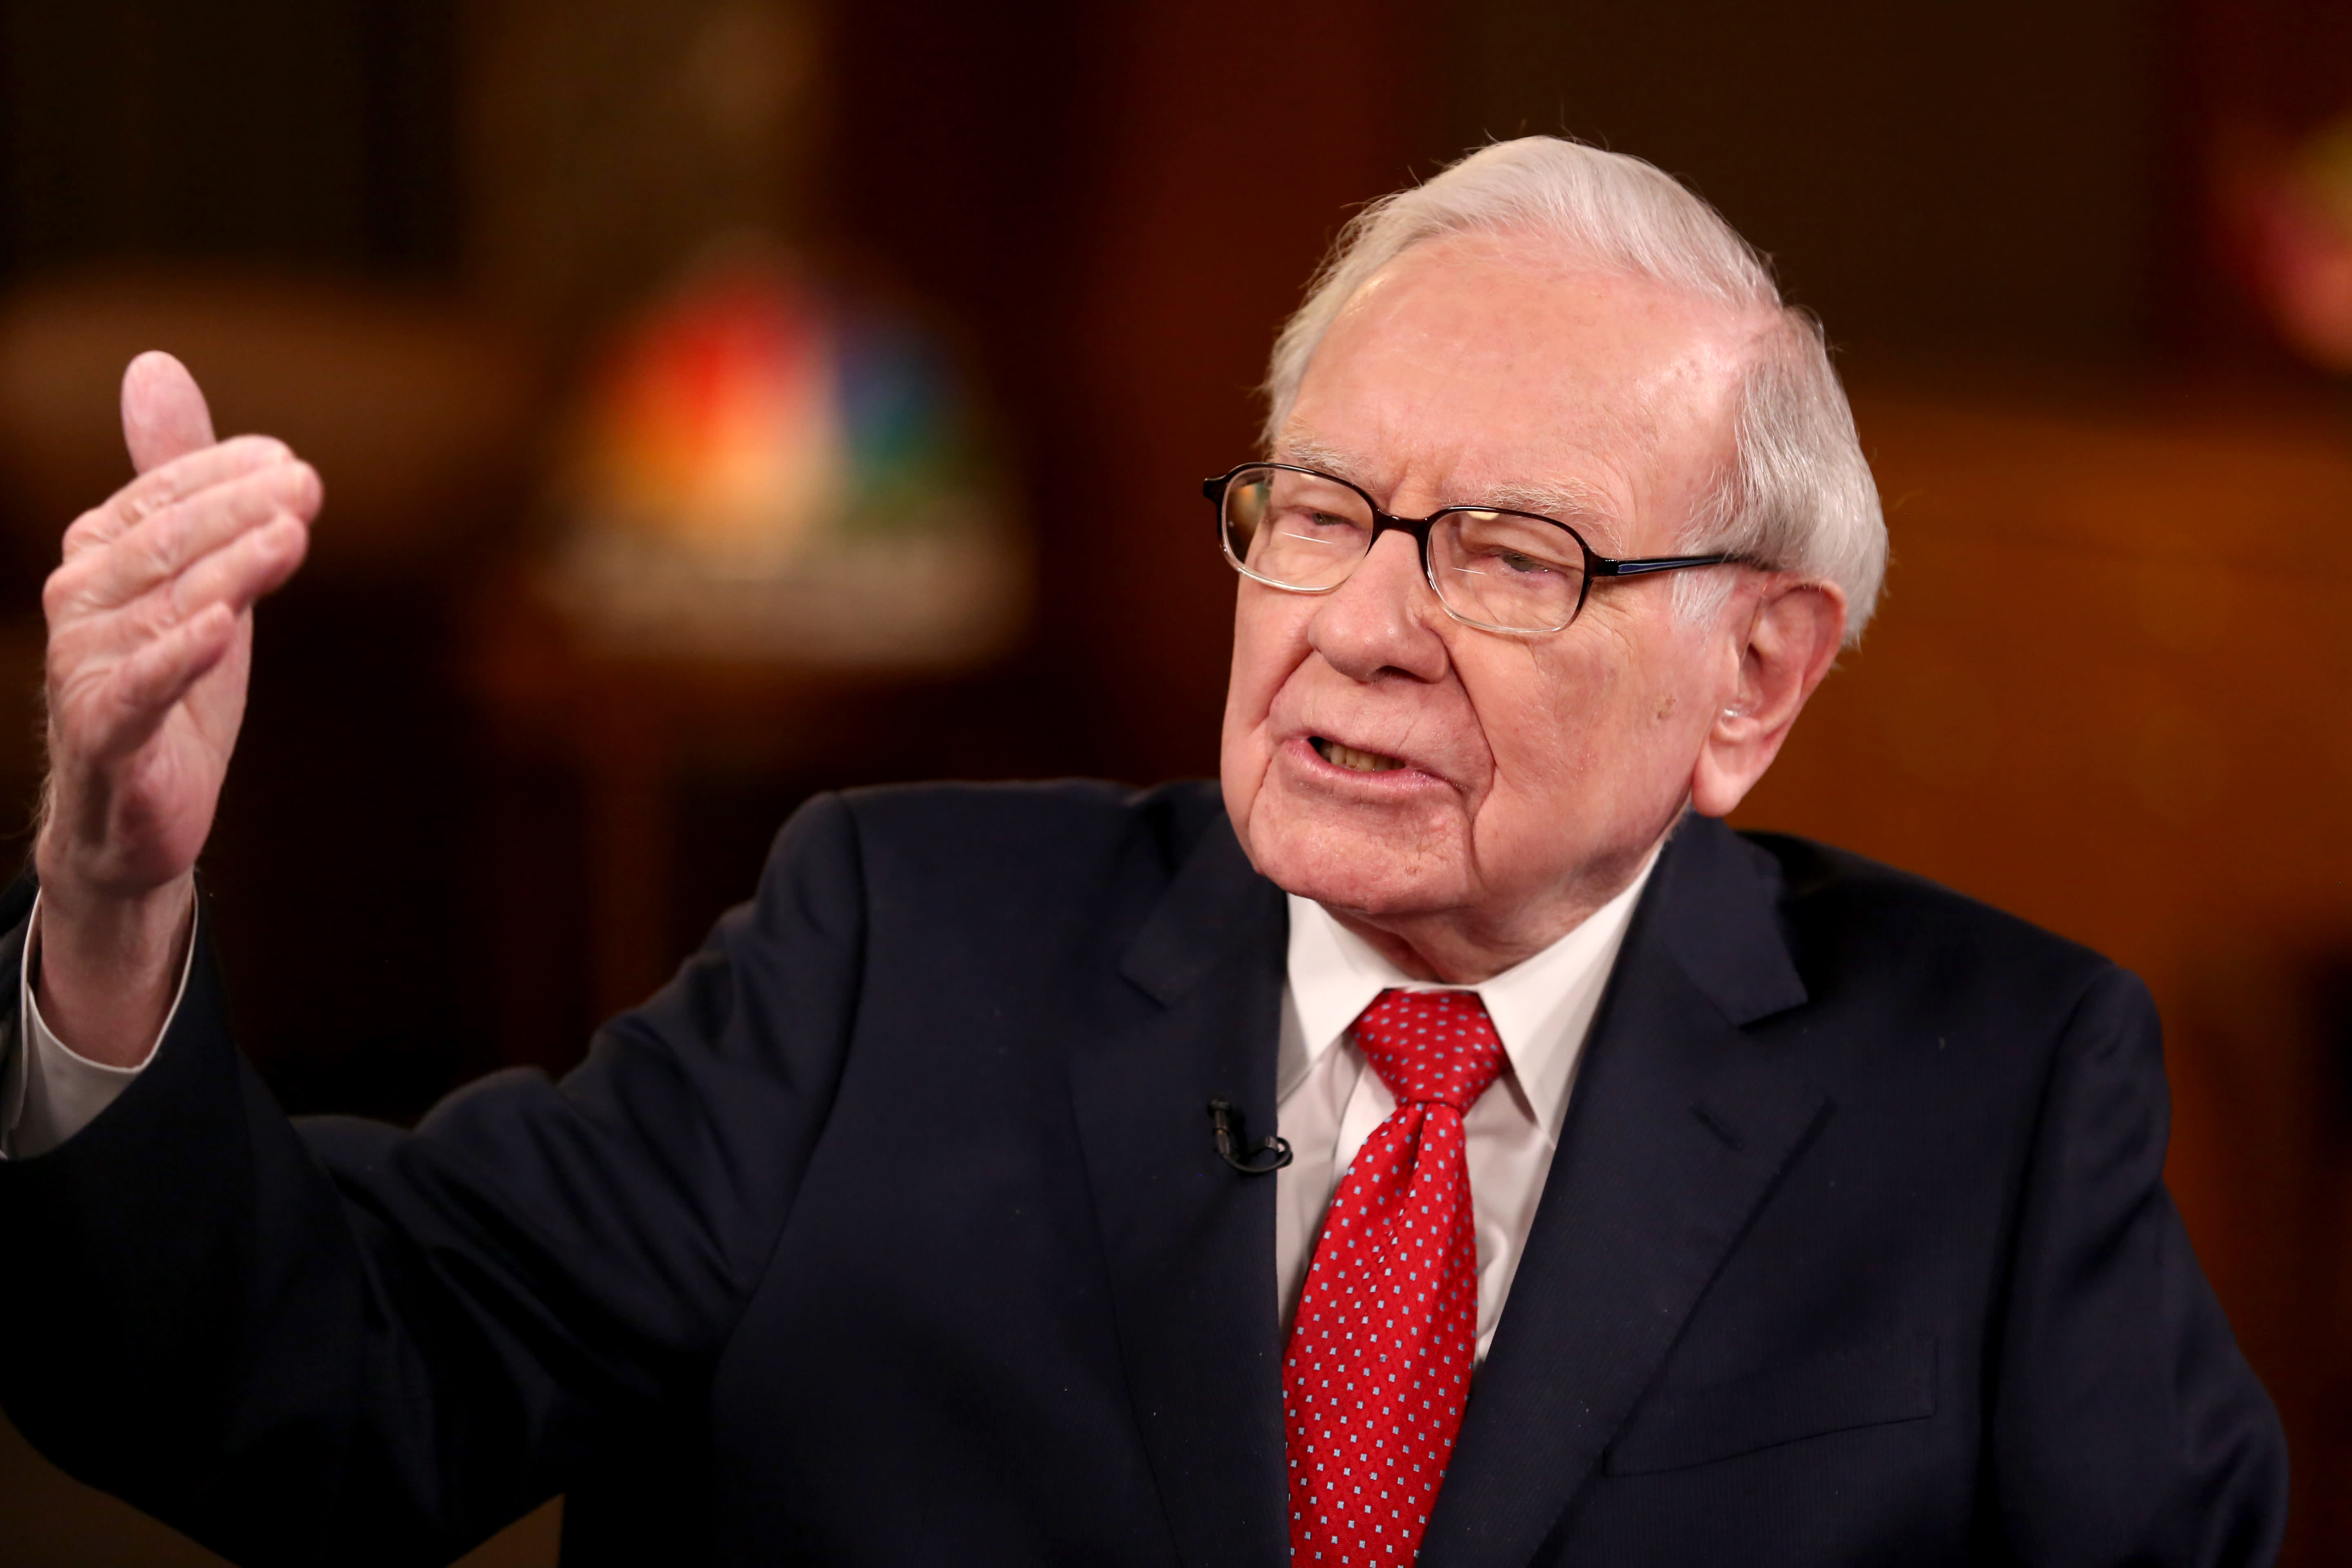 Warren Buffett calls Bitcoin a ‘gambling token’ | Fortune Crypto